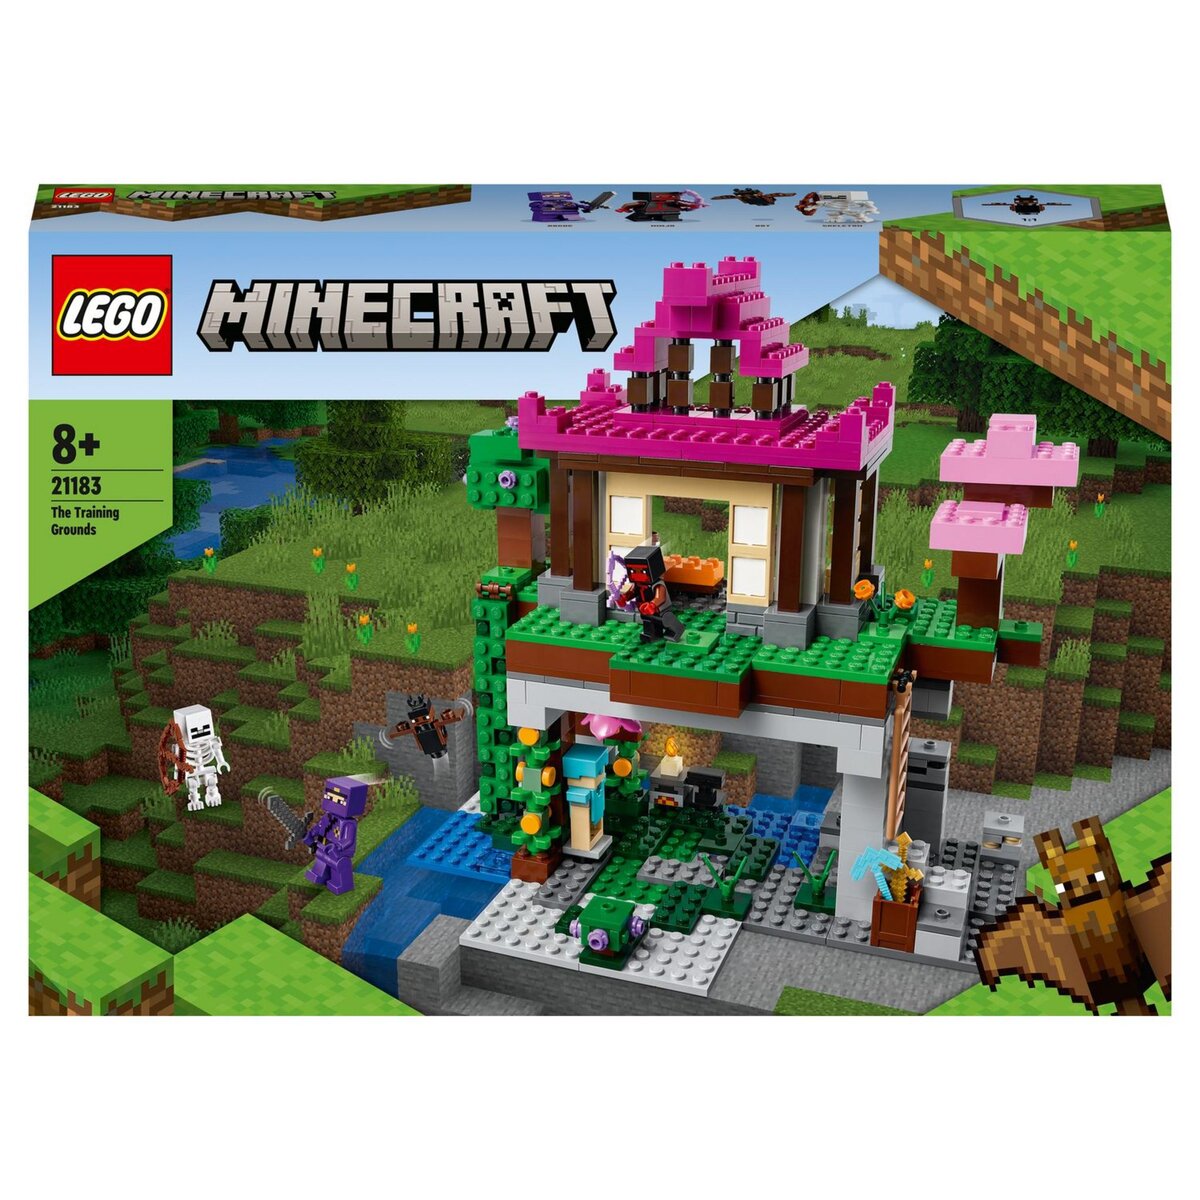 LEGO 21178 Minecraft Le Refuge du Renard – L'ARBRE AUX LUTINS